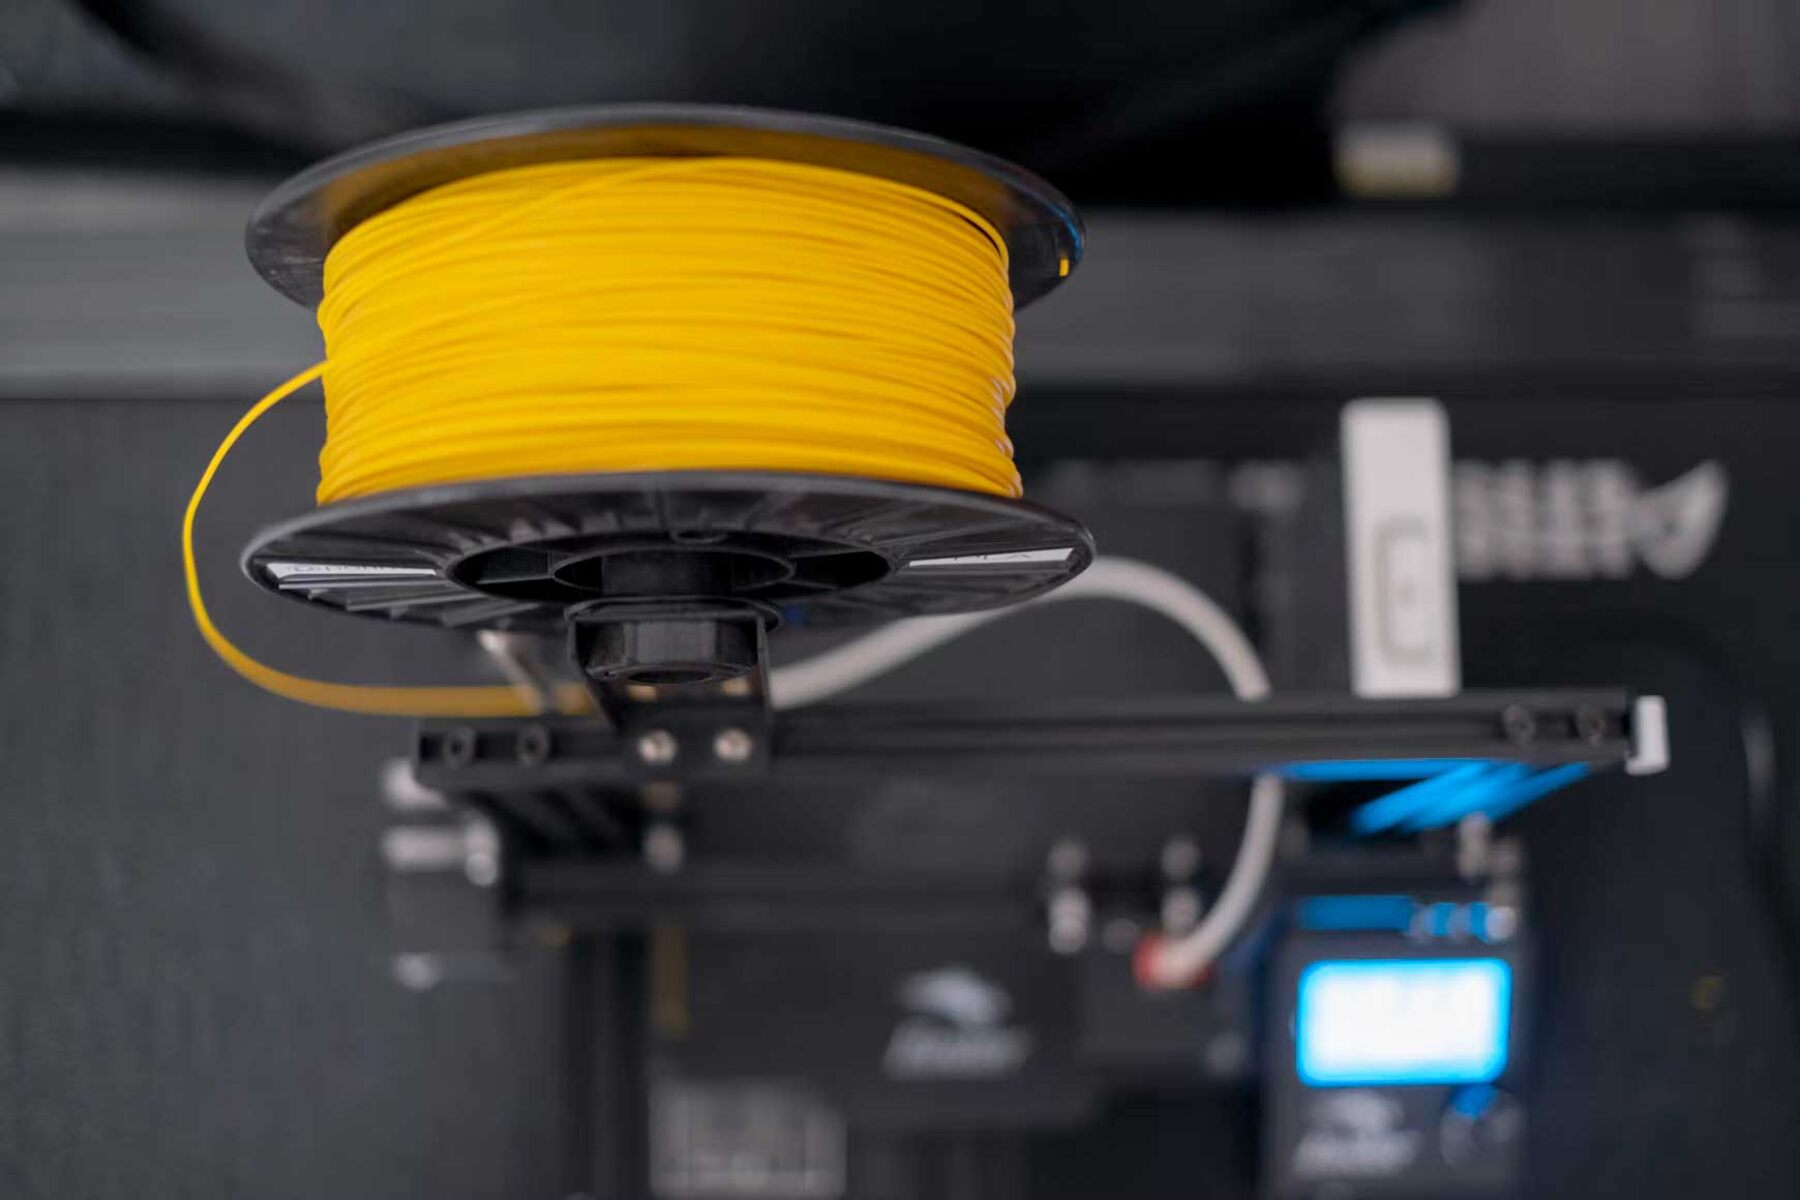 How To Make A 3D Printer Filament